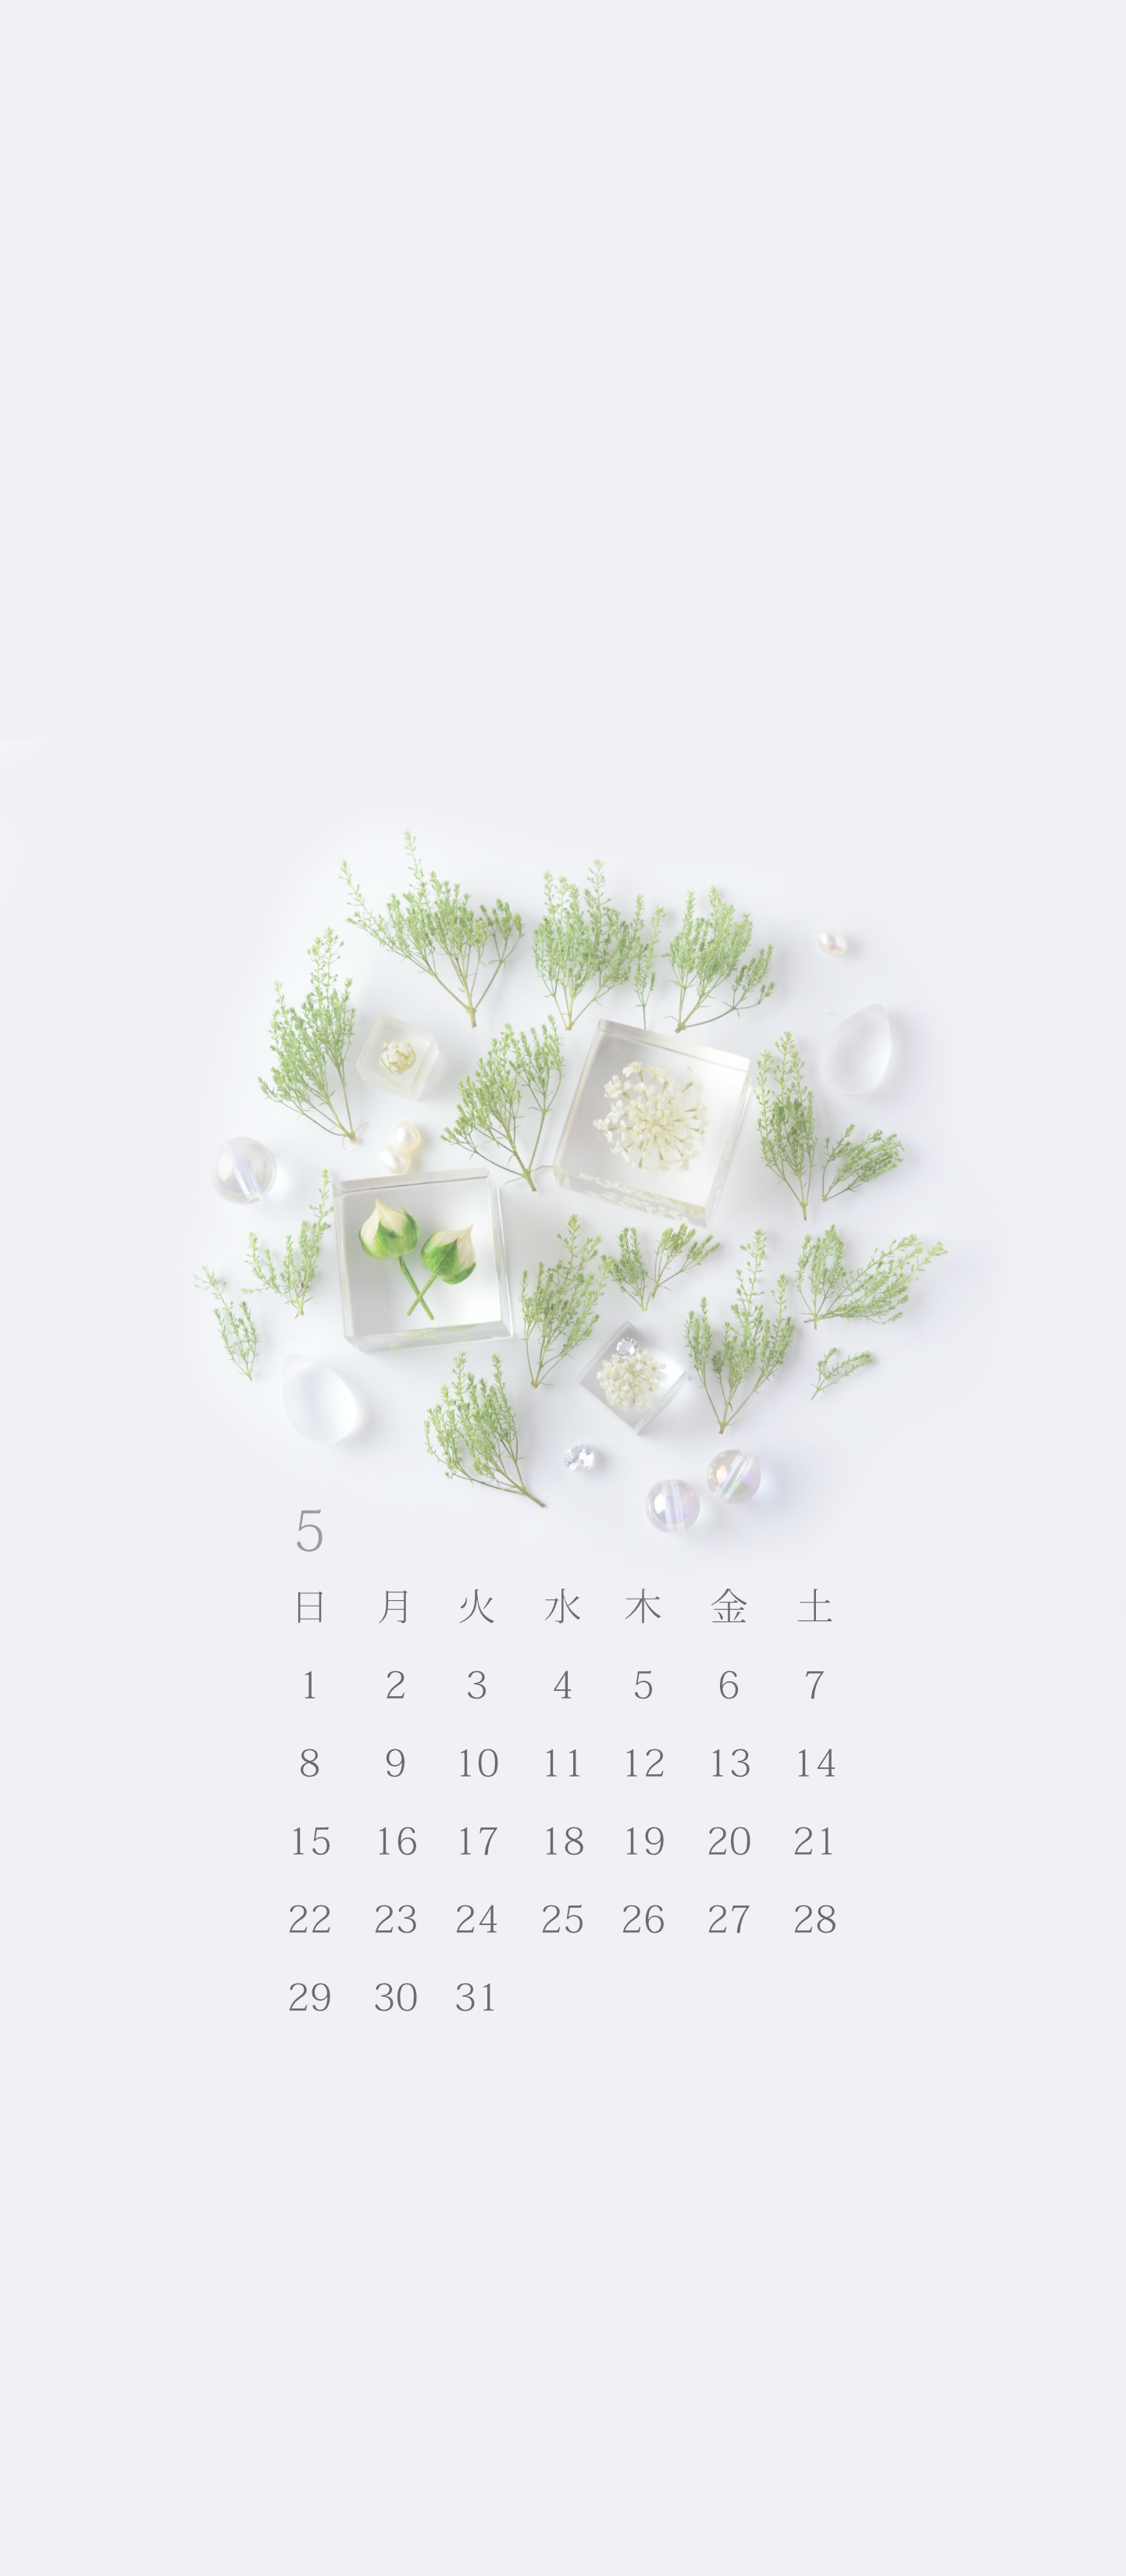 無料ロック画面カレンダー 「5月 新緑の候」